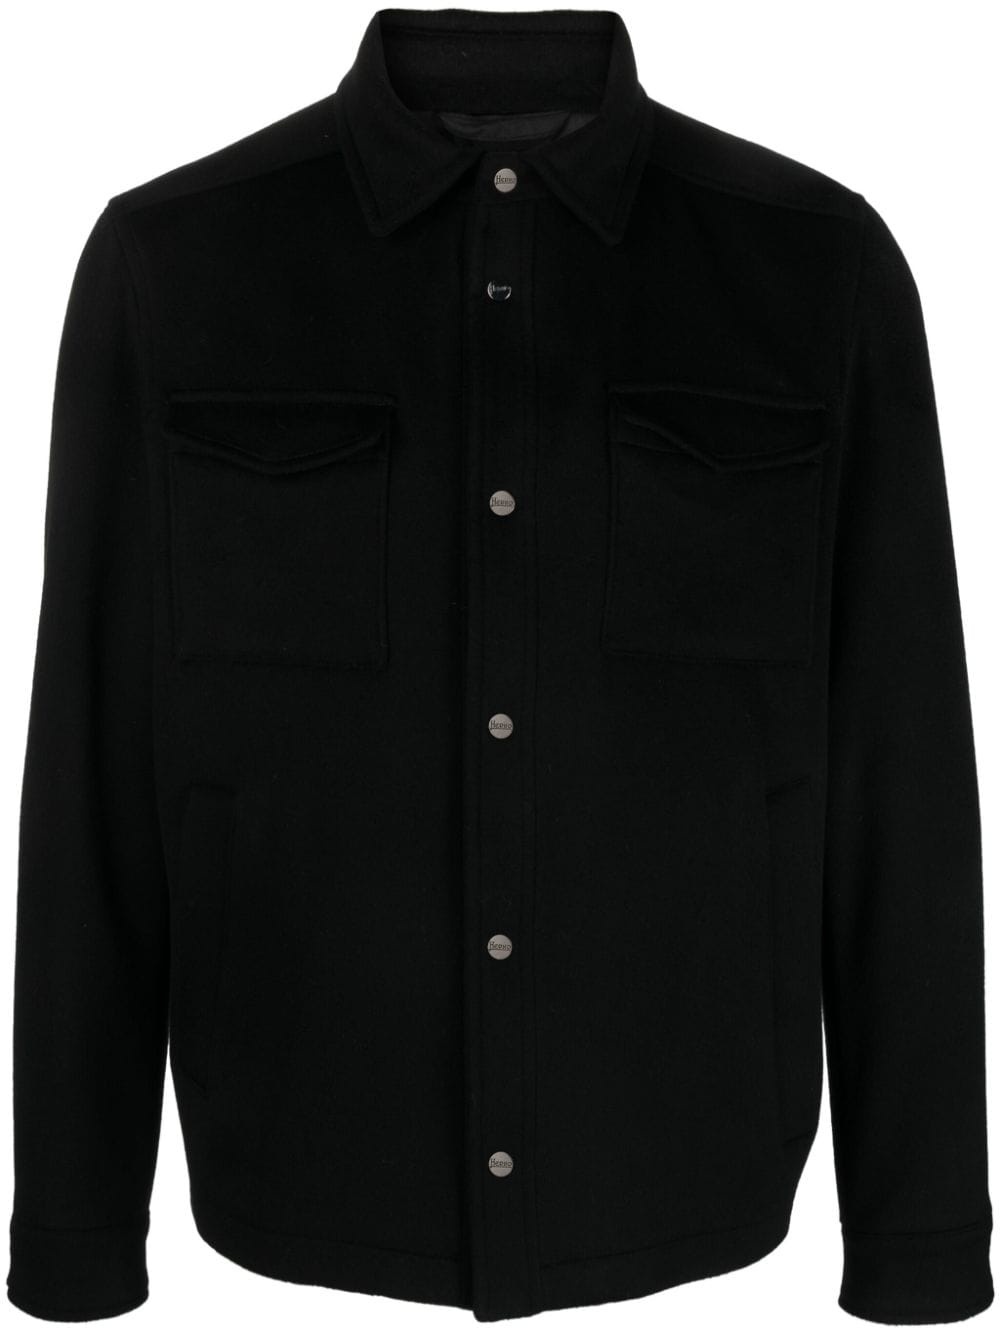 button-up shirt jacket - 1